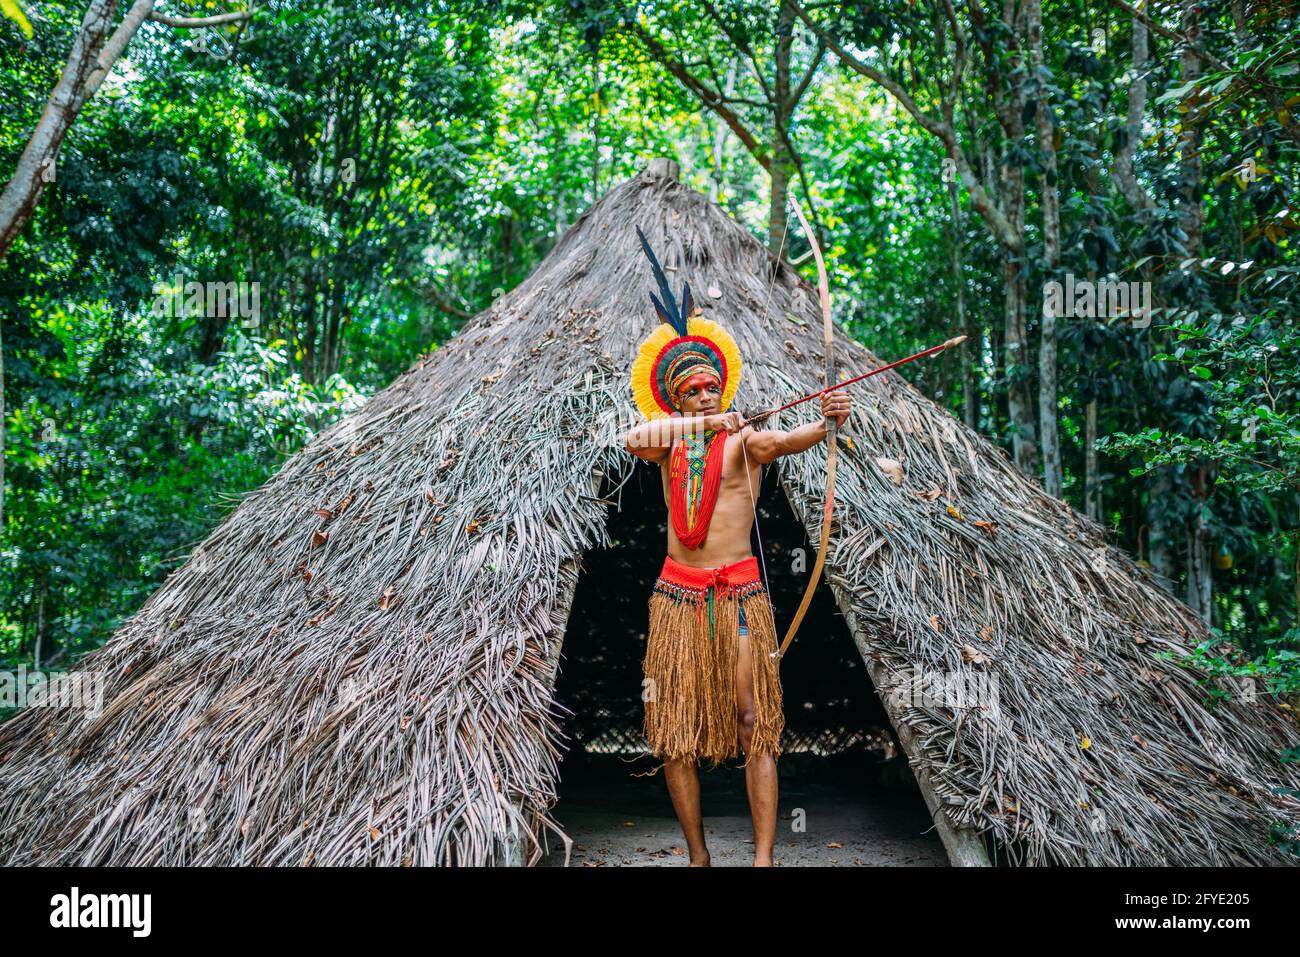 Indianer aus dem Stamm der Pataxó mit Pfeil und Bogen. Brasilianischer  Inder mit Federkopfschmuck und Halskette Stockfotografie - Alamy